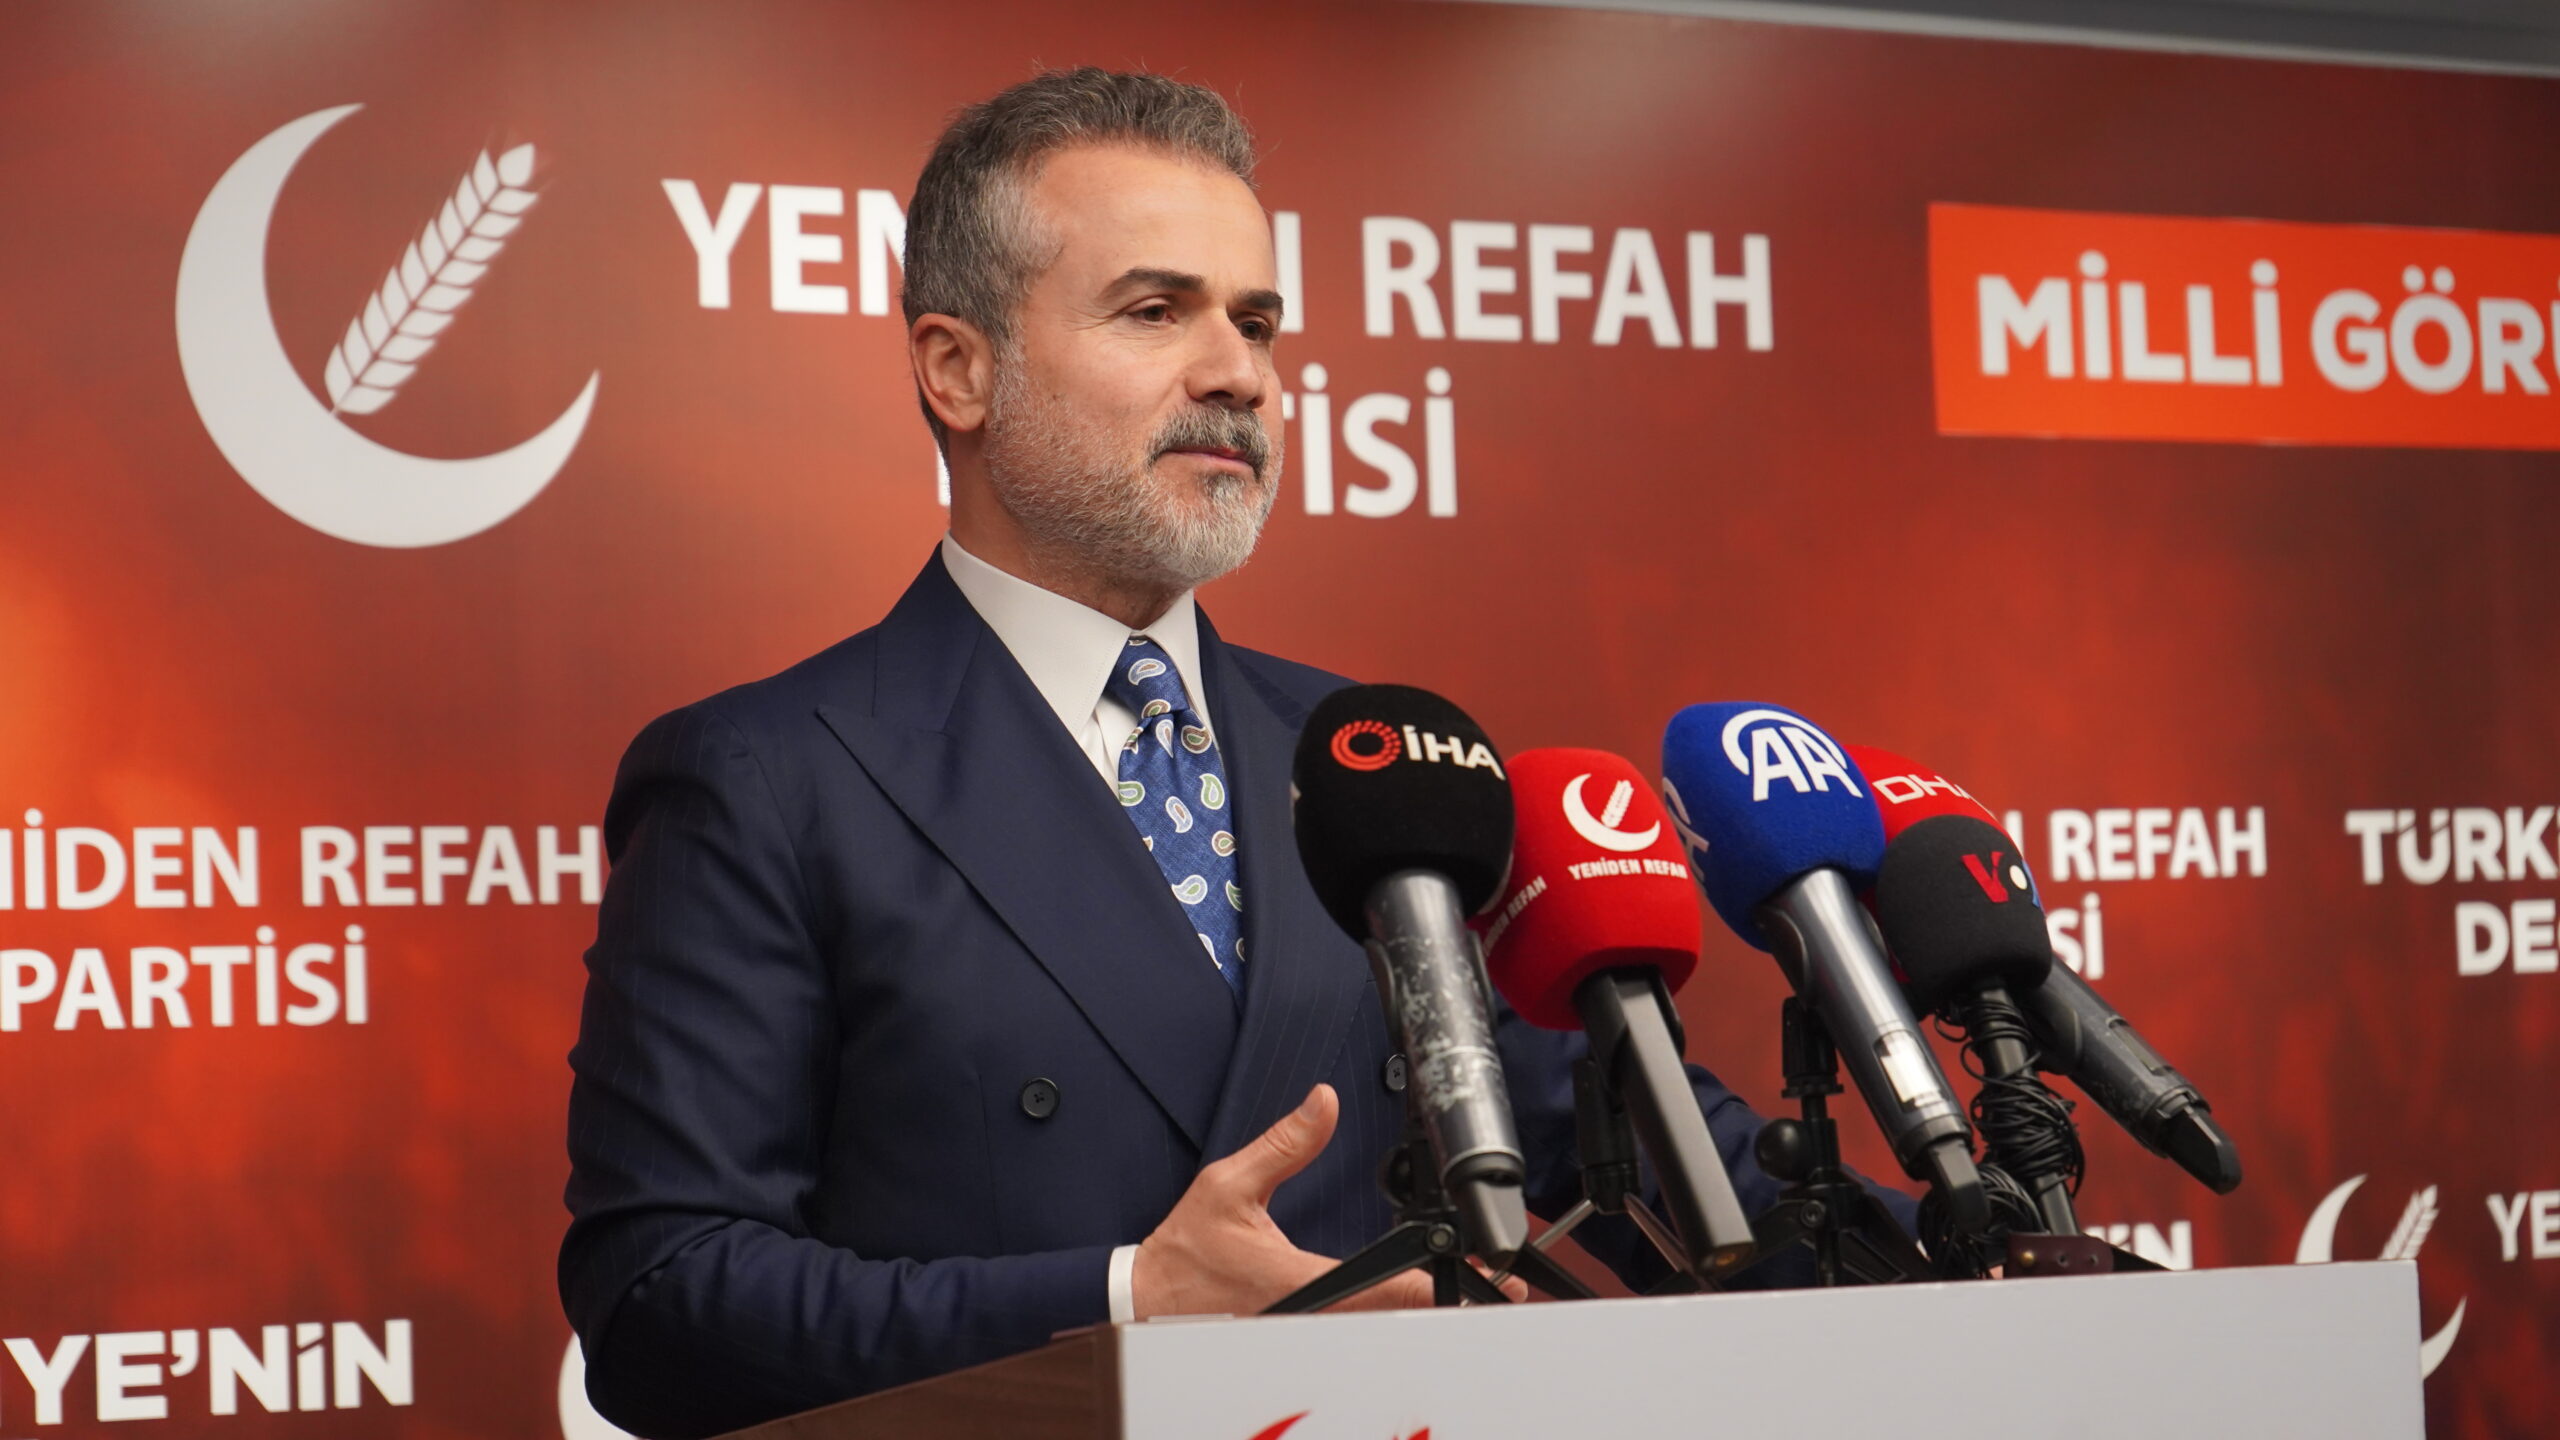 Suat Kılıç: ‘Bu şartlarda Türkiye’nin gündemi erken seçim değil ekonomi olmalıdır’